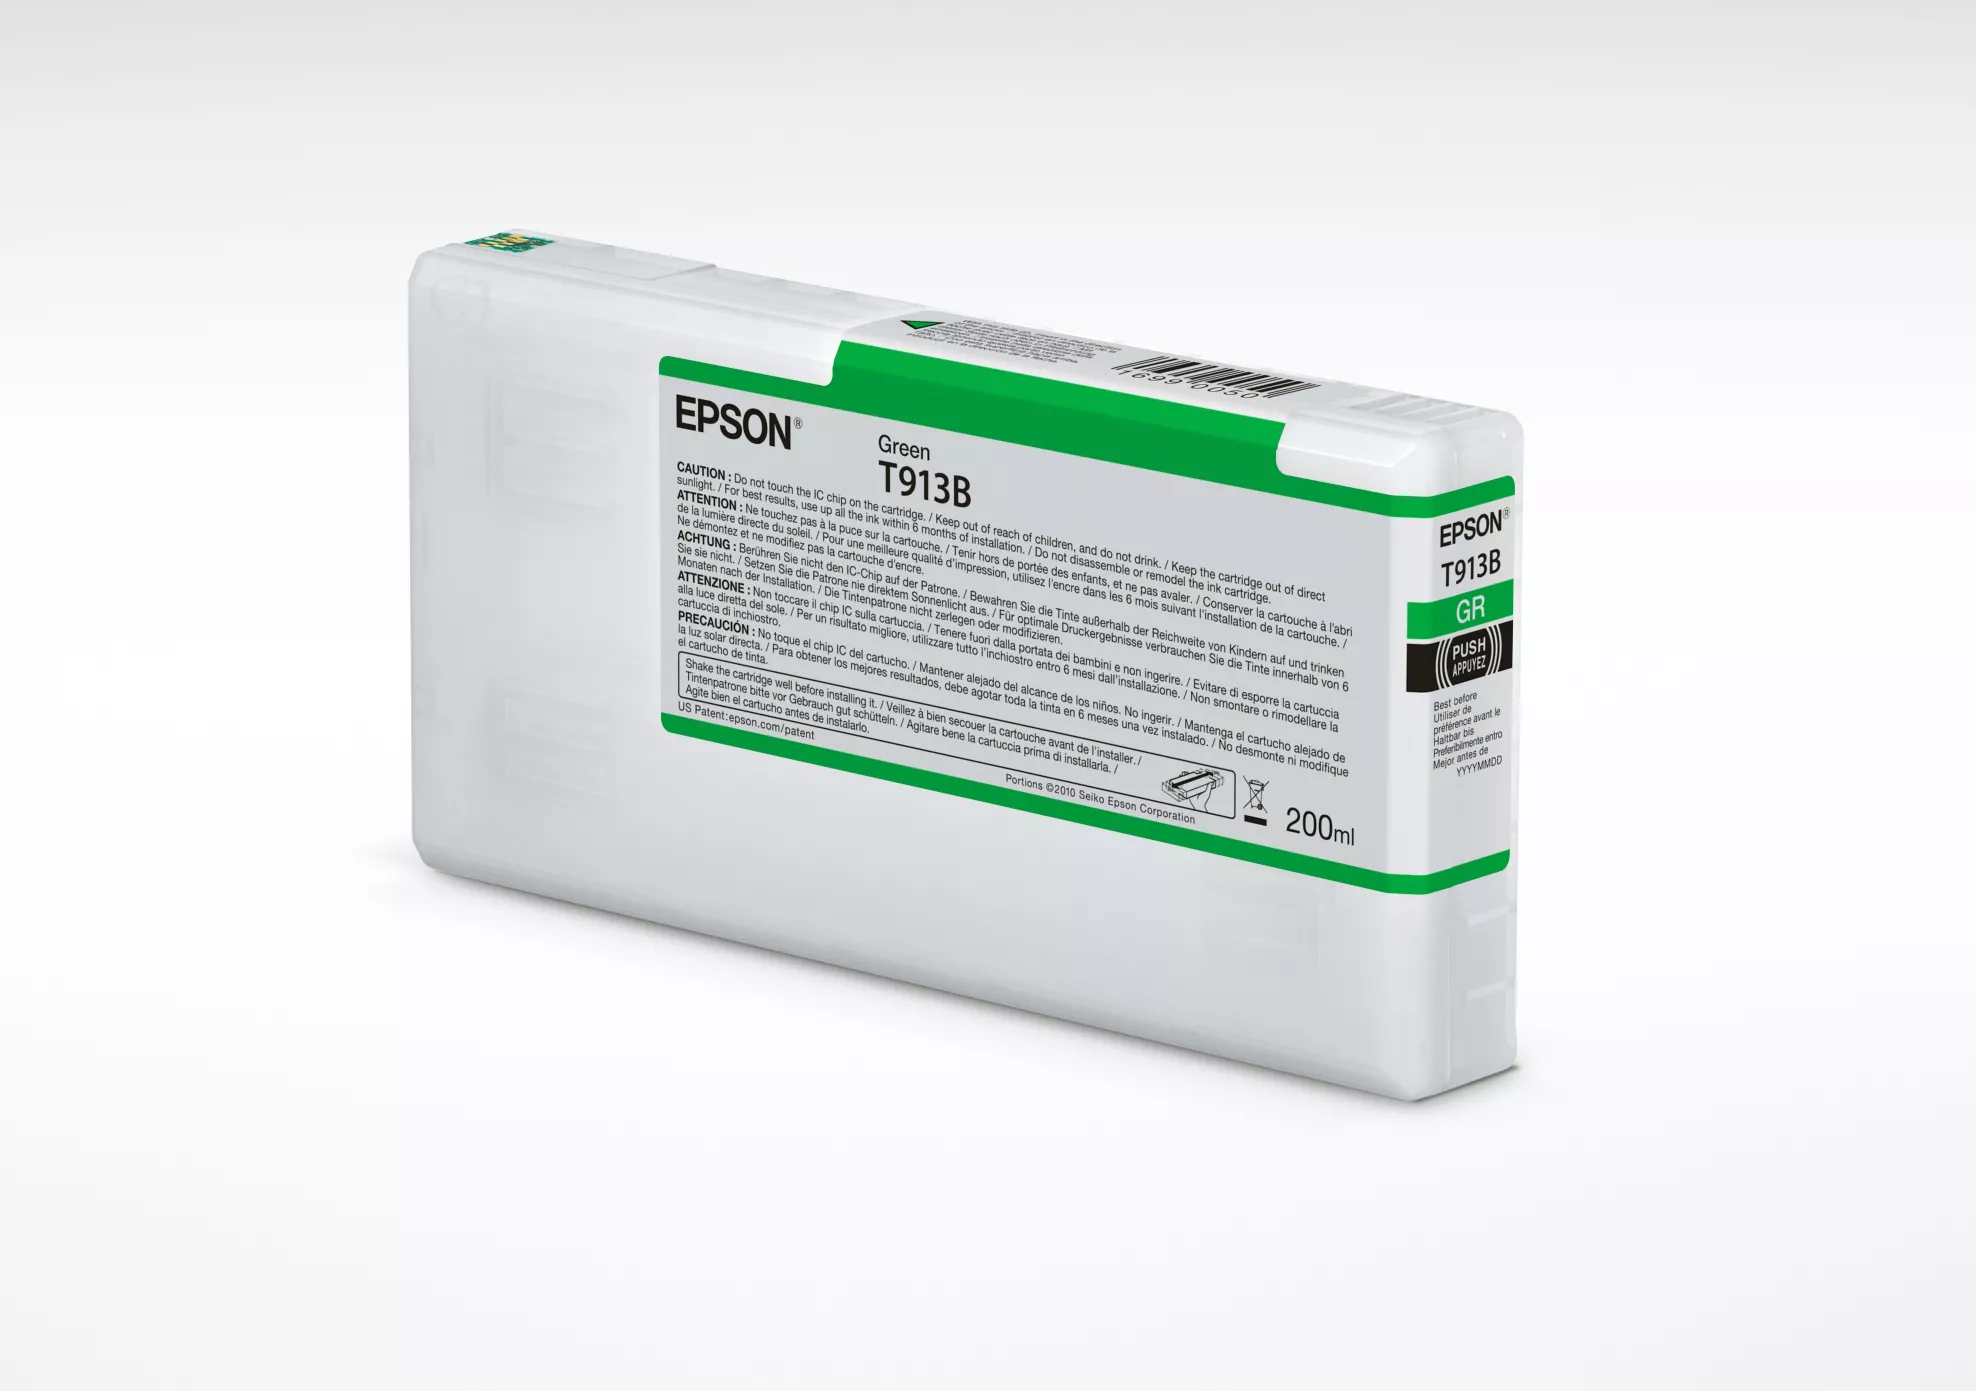 Achat EPSON T913B Green Ink Cartridge 200ml et autres produits de la marque Epson